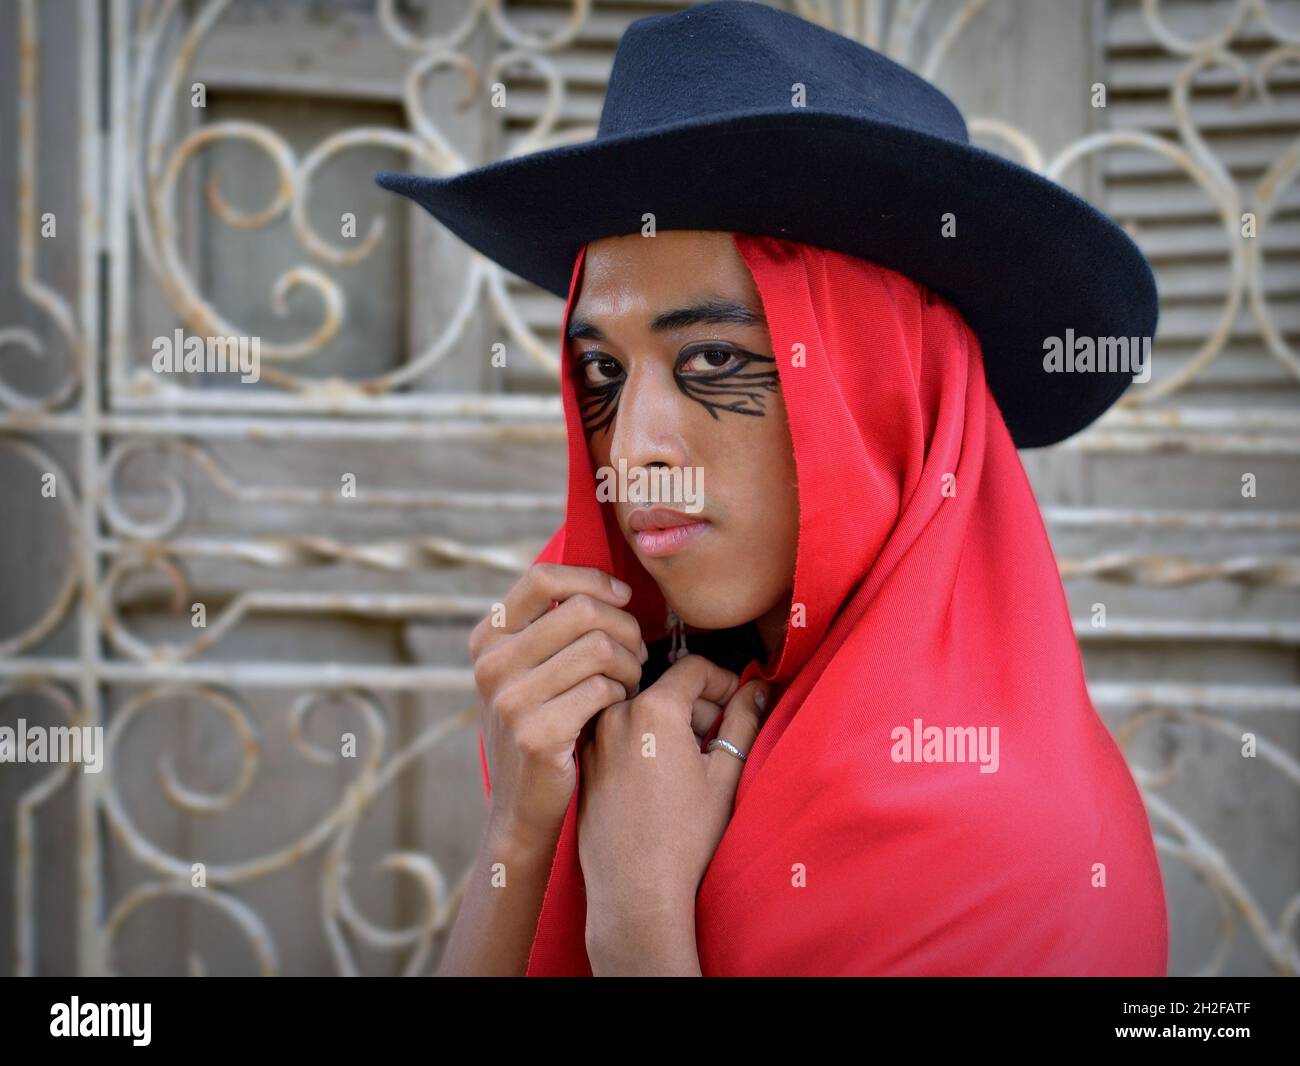 Il giovane e bello Latino non binario indossa un cappello nero con rebozo messicano rosso come un cappuccio e si pone di fronte ad una griglia finestra in ferro battuto bianco. Foto Stock